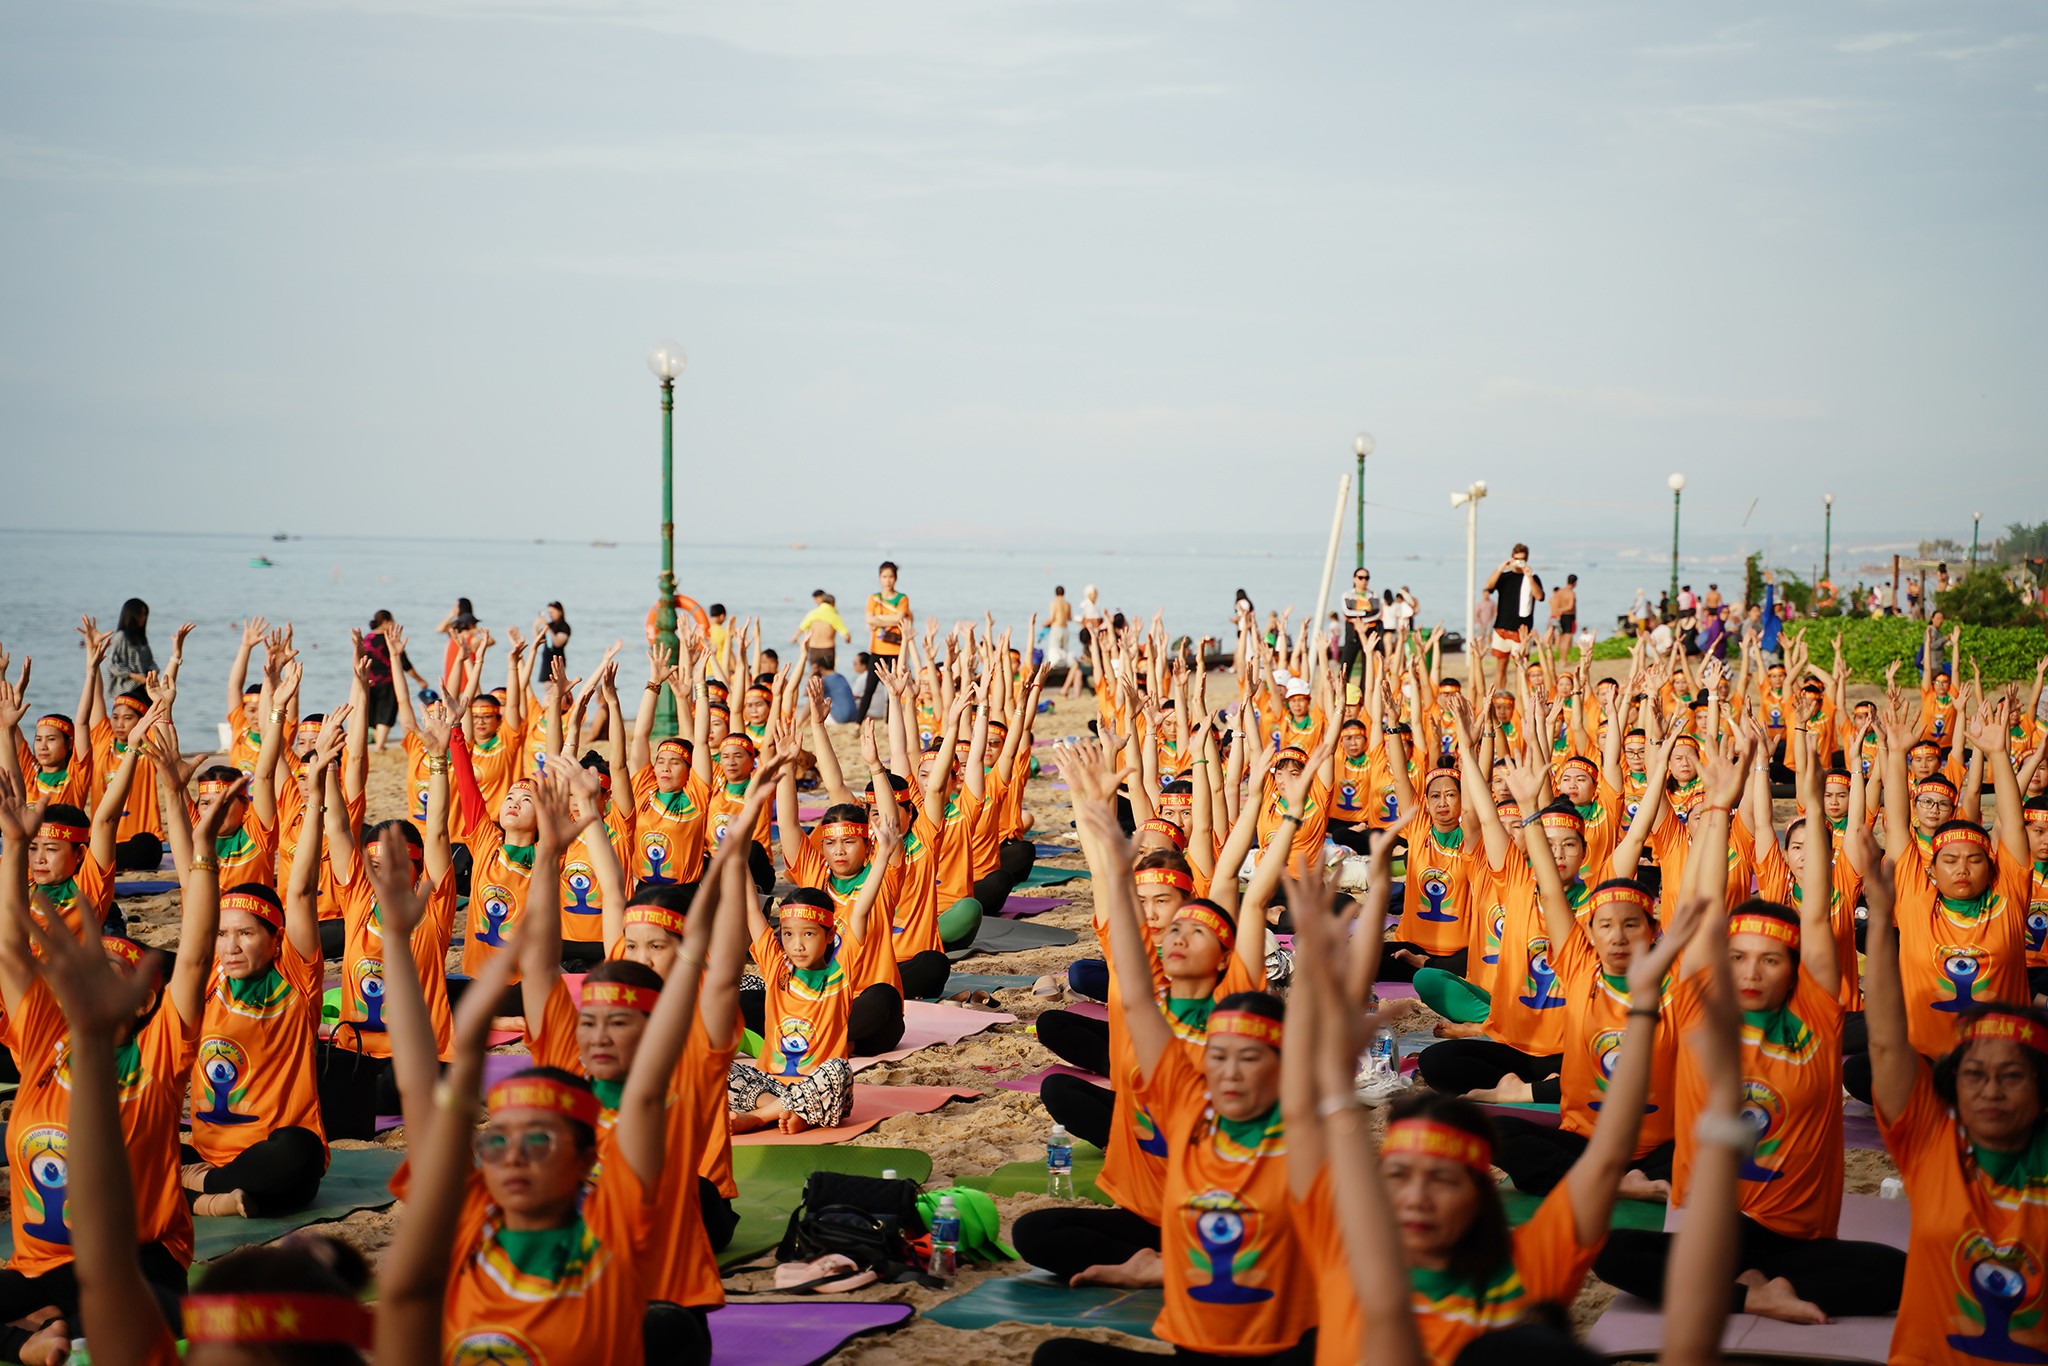 Màn đồng diễn Yoga tập thể tại công viên Đồi Dương, thành phố Phan Thiết, tỉnh Bình Thuận. (Ảnh: binhthuan.gov.vn)